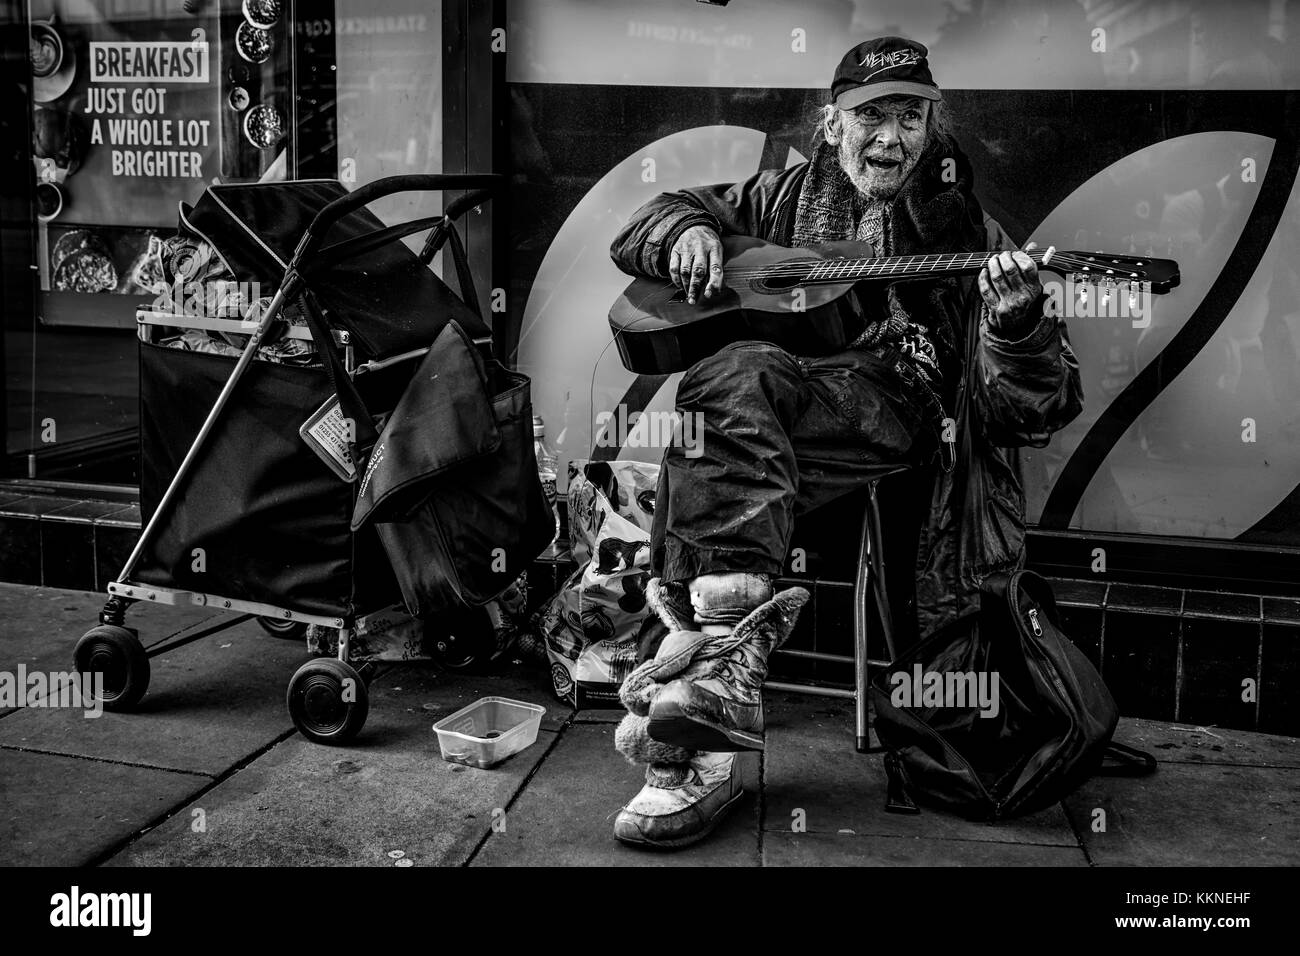 Hombre sin hogar Busking en la calle con sus pertenencias en el centro de la ciudad de Manchester, Inglaterra, Reino Unido. Foto de stock